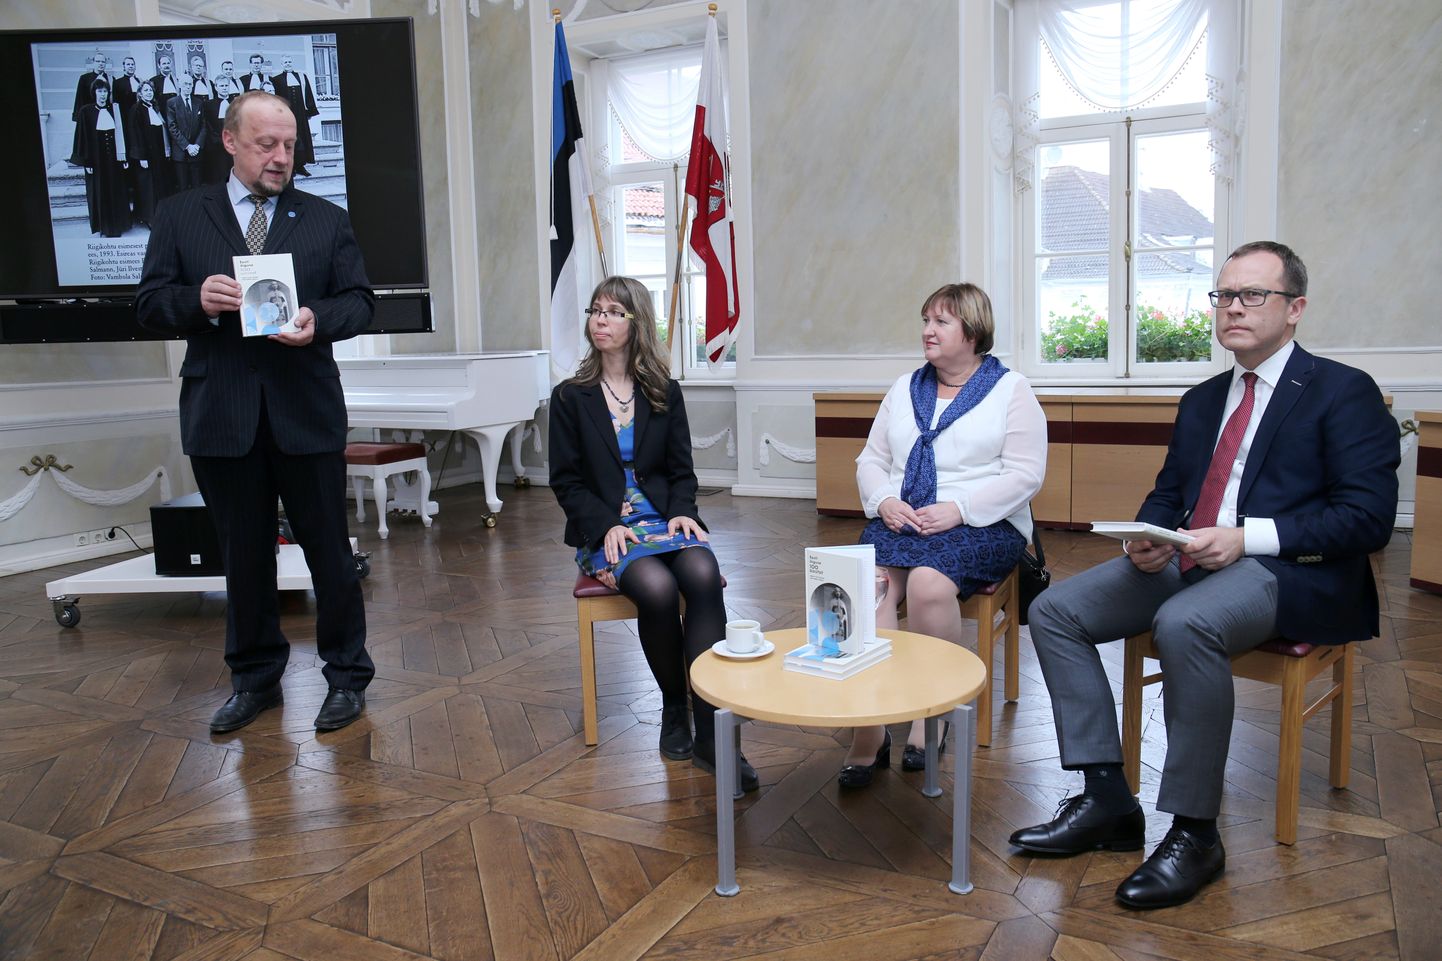 Toomas Kiho kõneles raamatust, mille autoreid Hesi Siimets-Grossi (vasakul) ja Marju Luts-Sootakit küsitles Urmas Klaas.